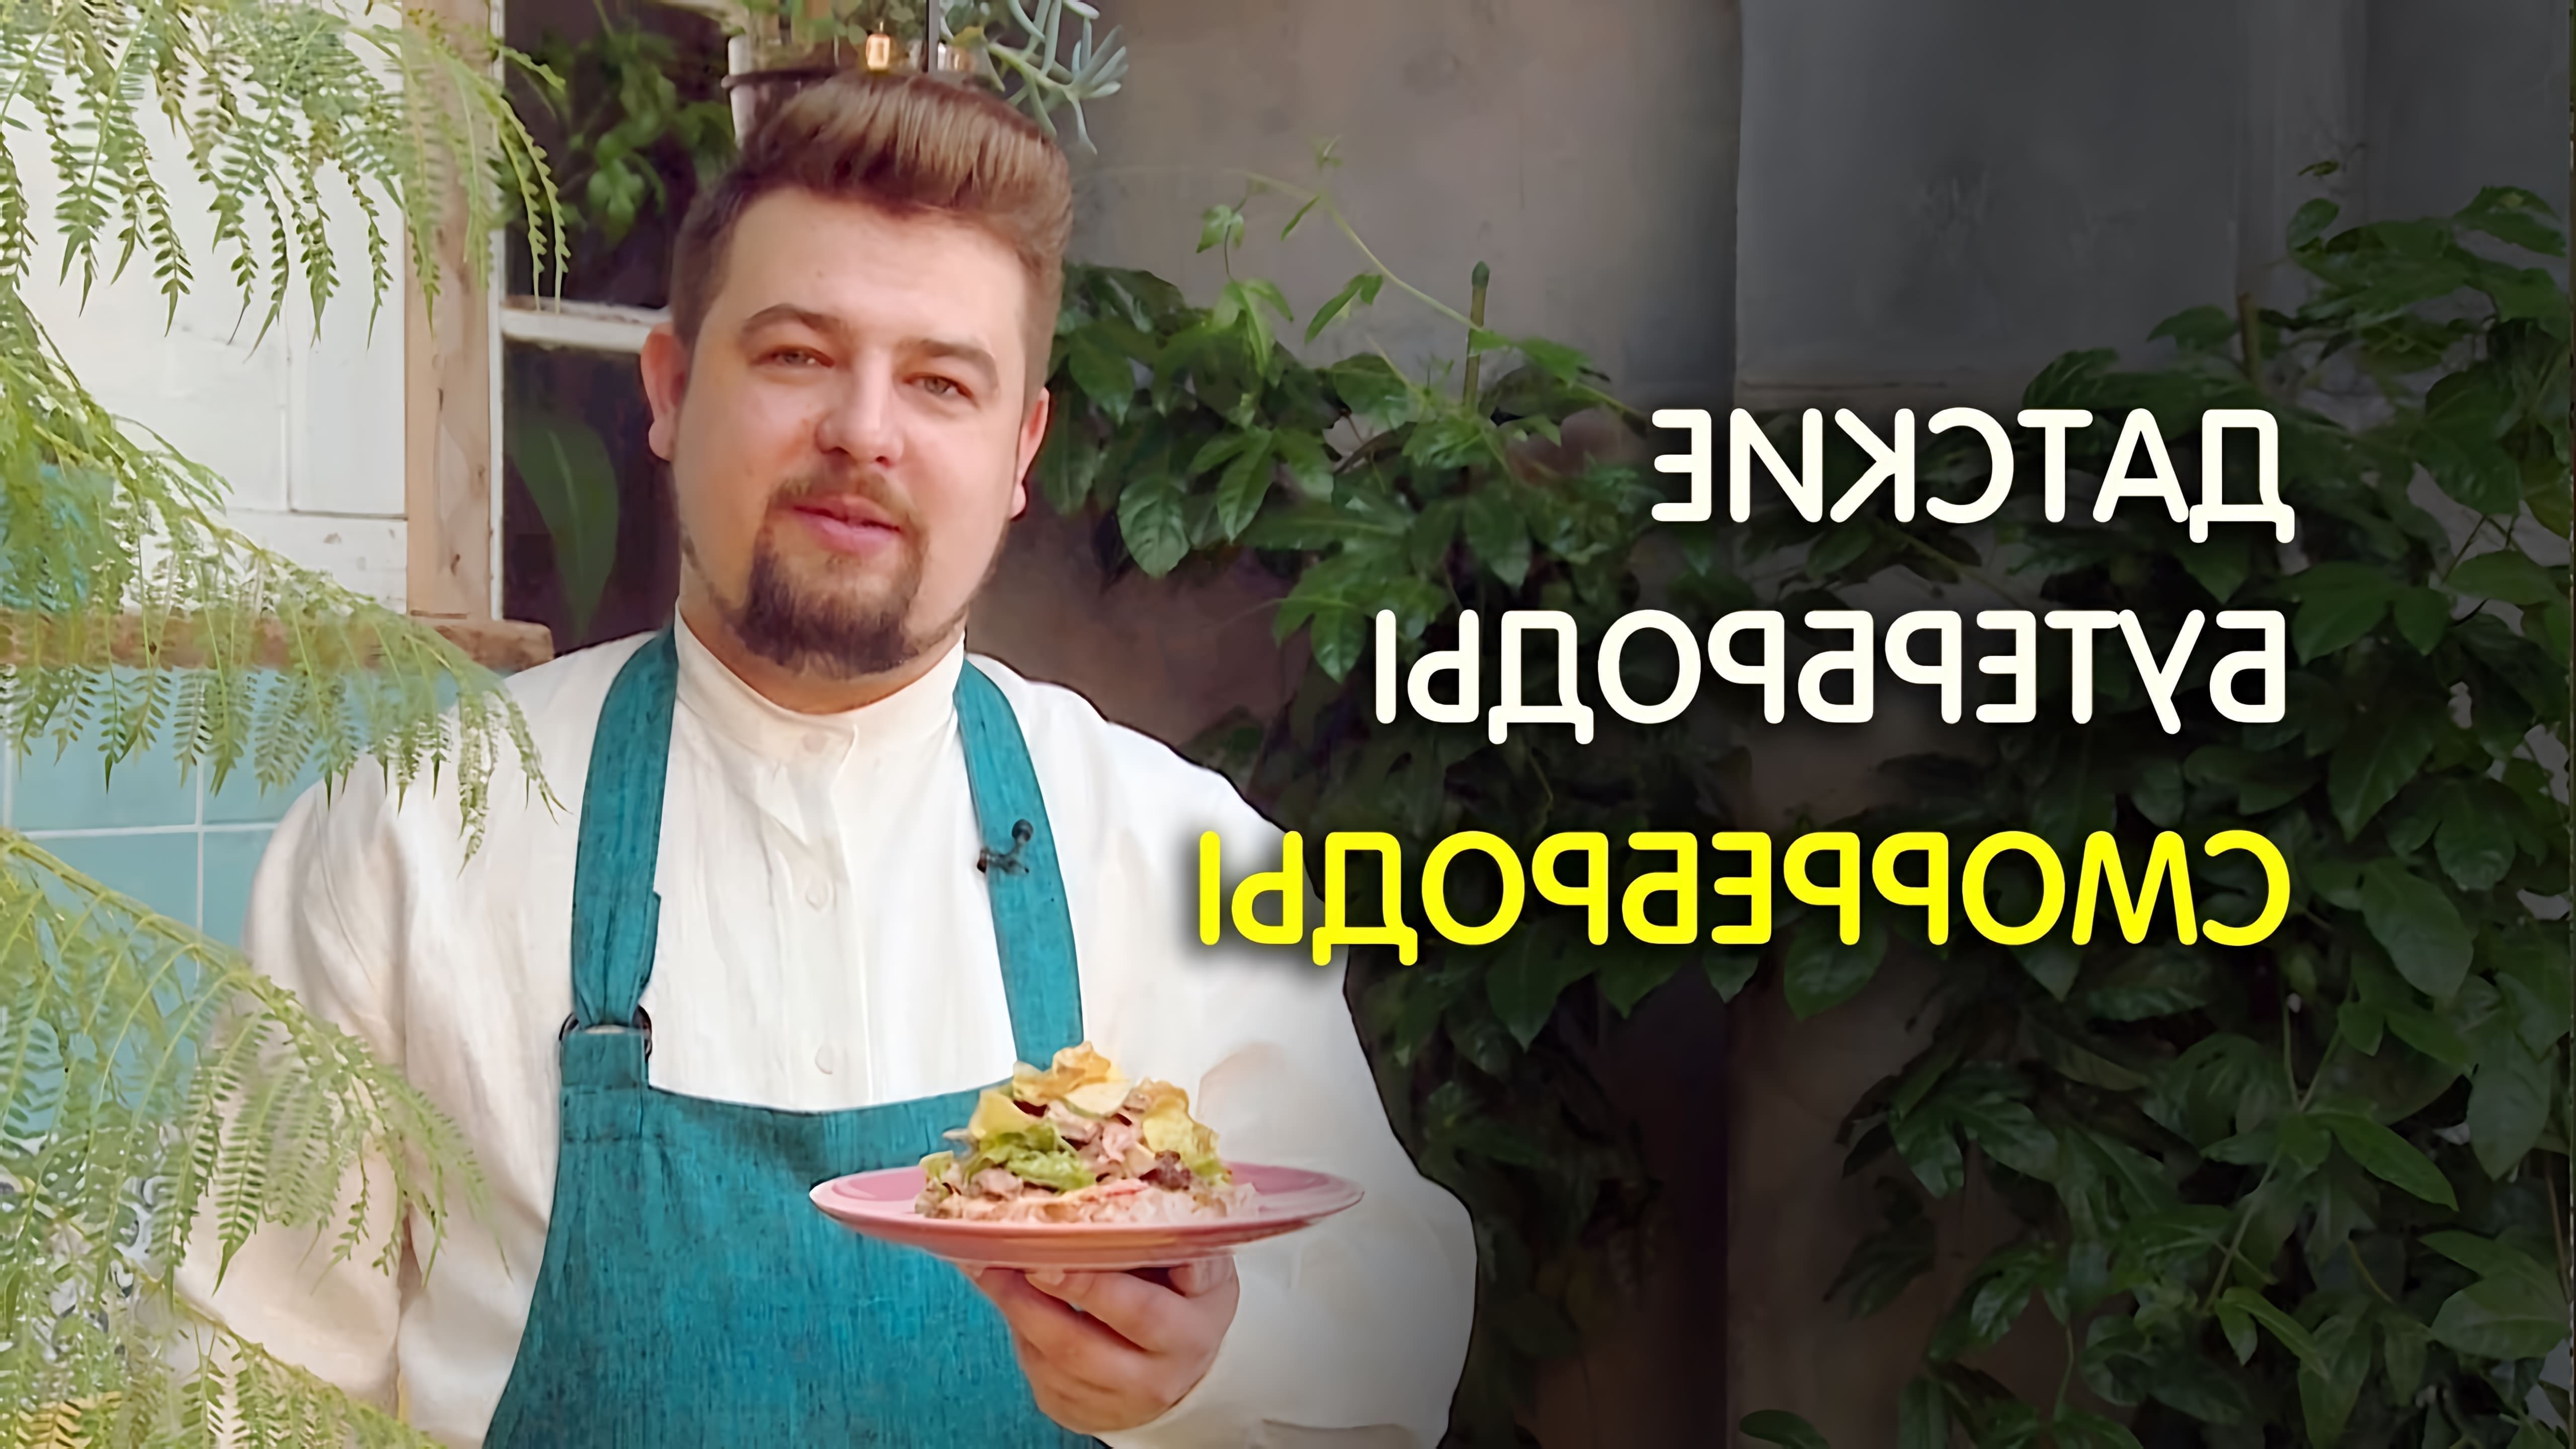 В данном видео шеф-повар Алексей Сидоров демонстрирует процесс приготовления датских бутербродов, также известных как сморреброды